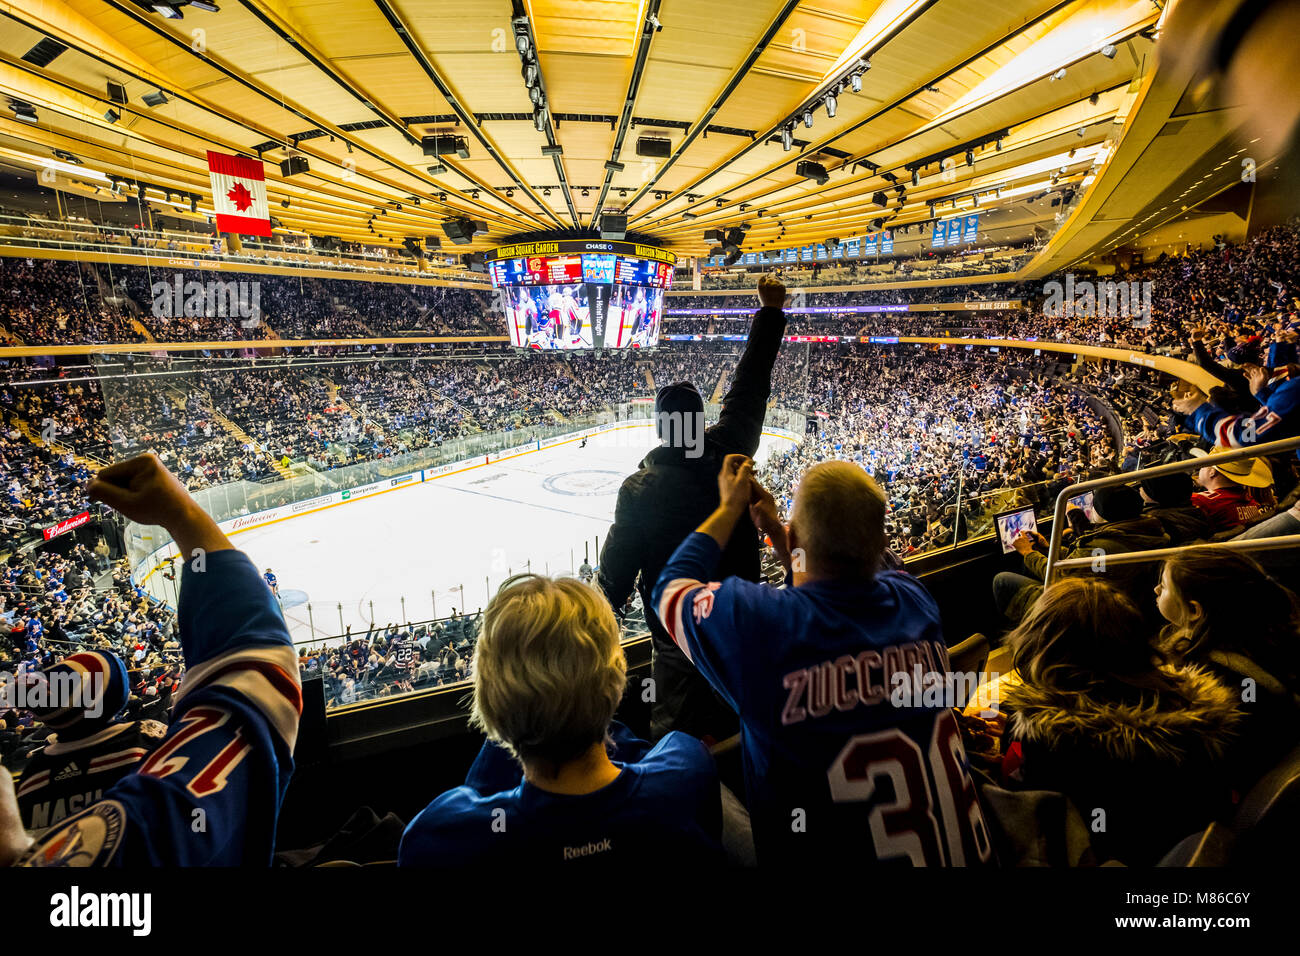 Les spectateurs à regarder le hockey sur glace match au Madison Square Garden, à Manhattan, New York City, New York State, USA Vs Rangers flammes Banque D'Images